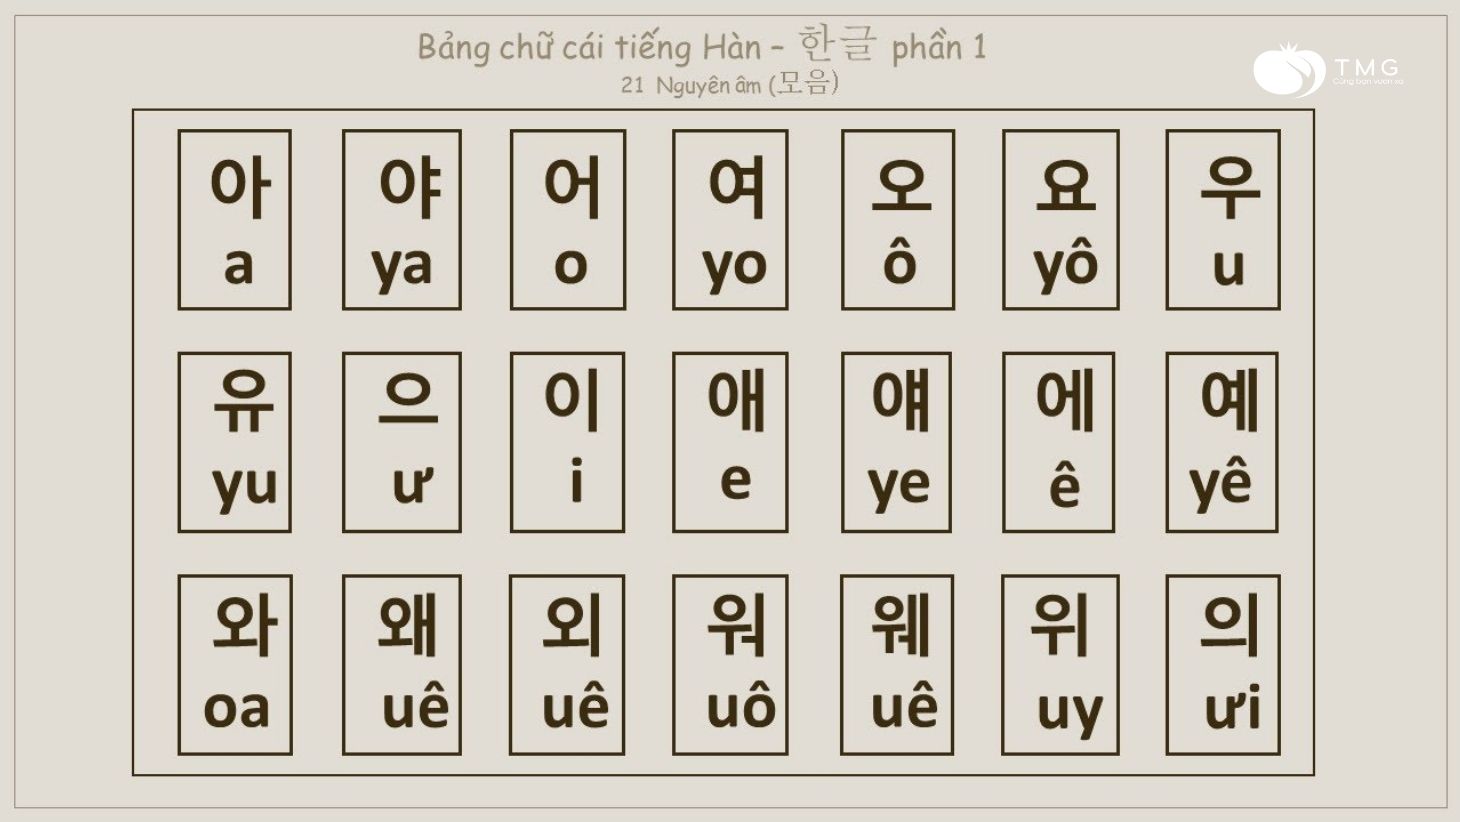 Bảng chữ cái tiếng Hàn 